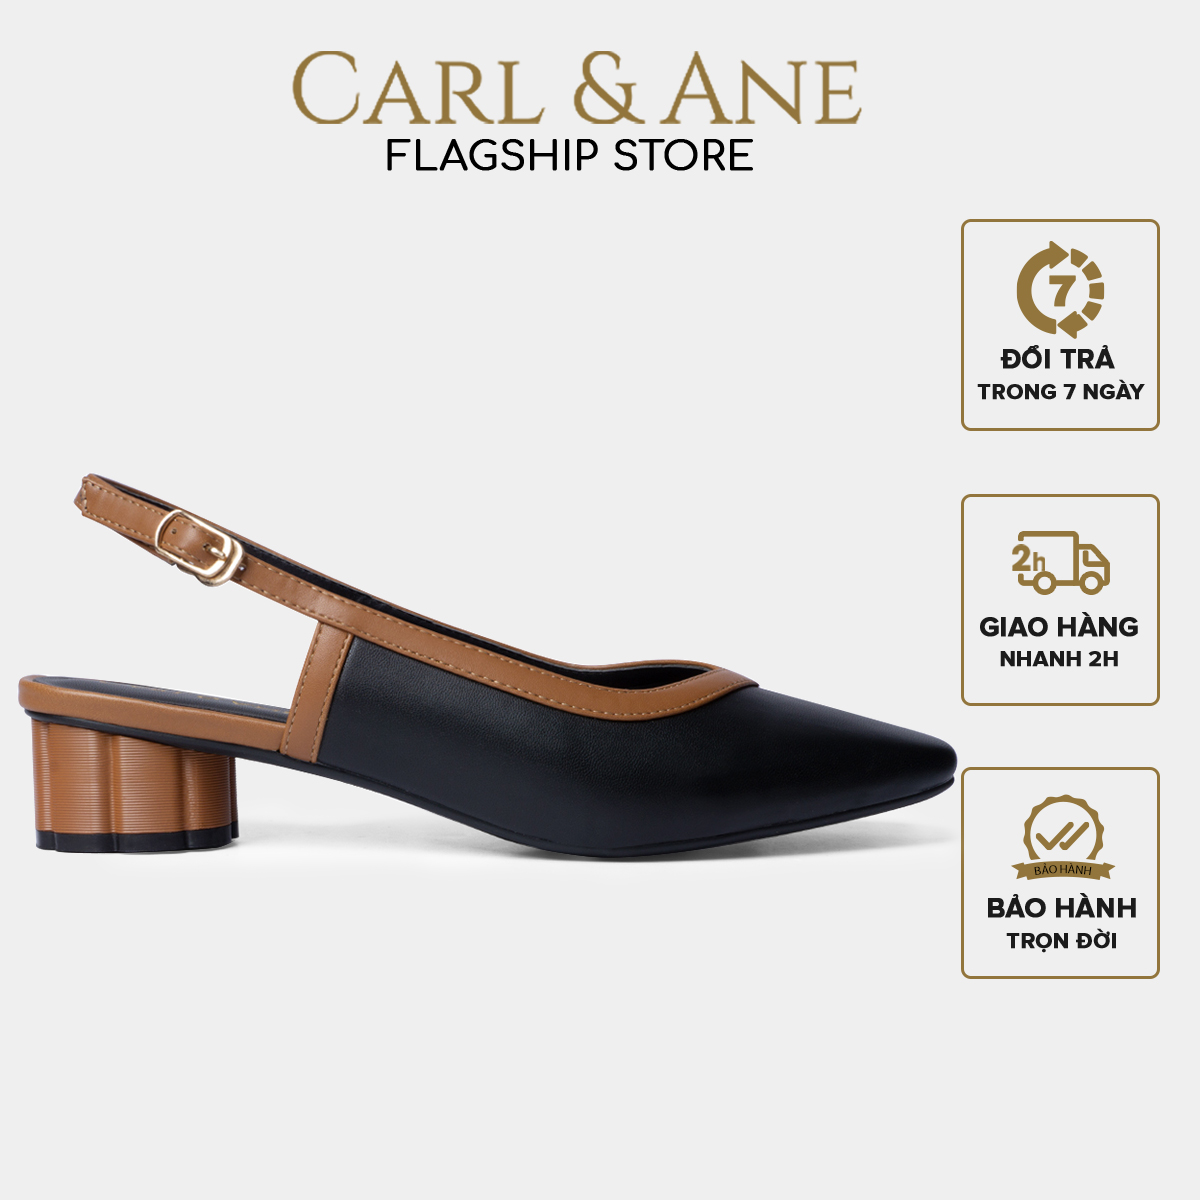 Carl & Ane - Giày cao gót thời trang mũi vuông hở gót phối dây tinh tế cao 3cm màu đen - CL005